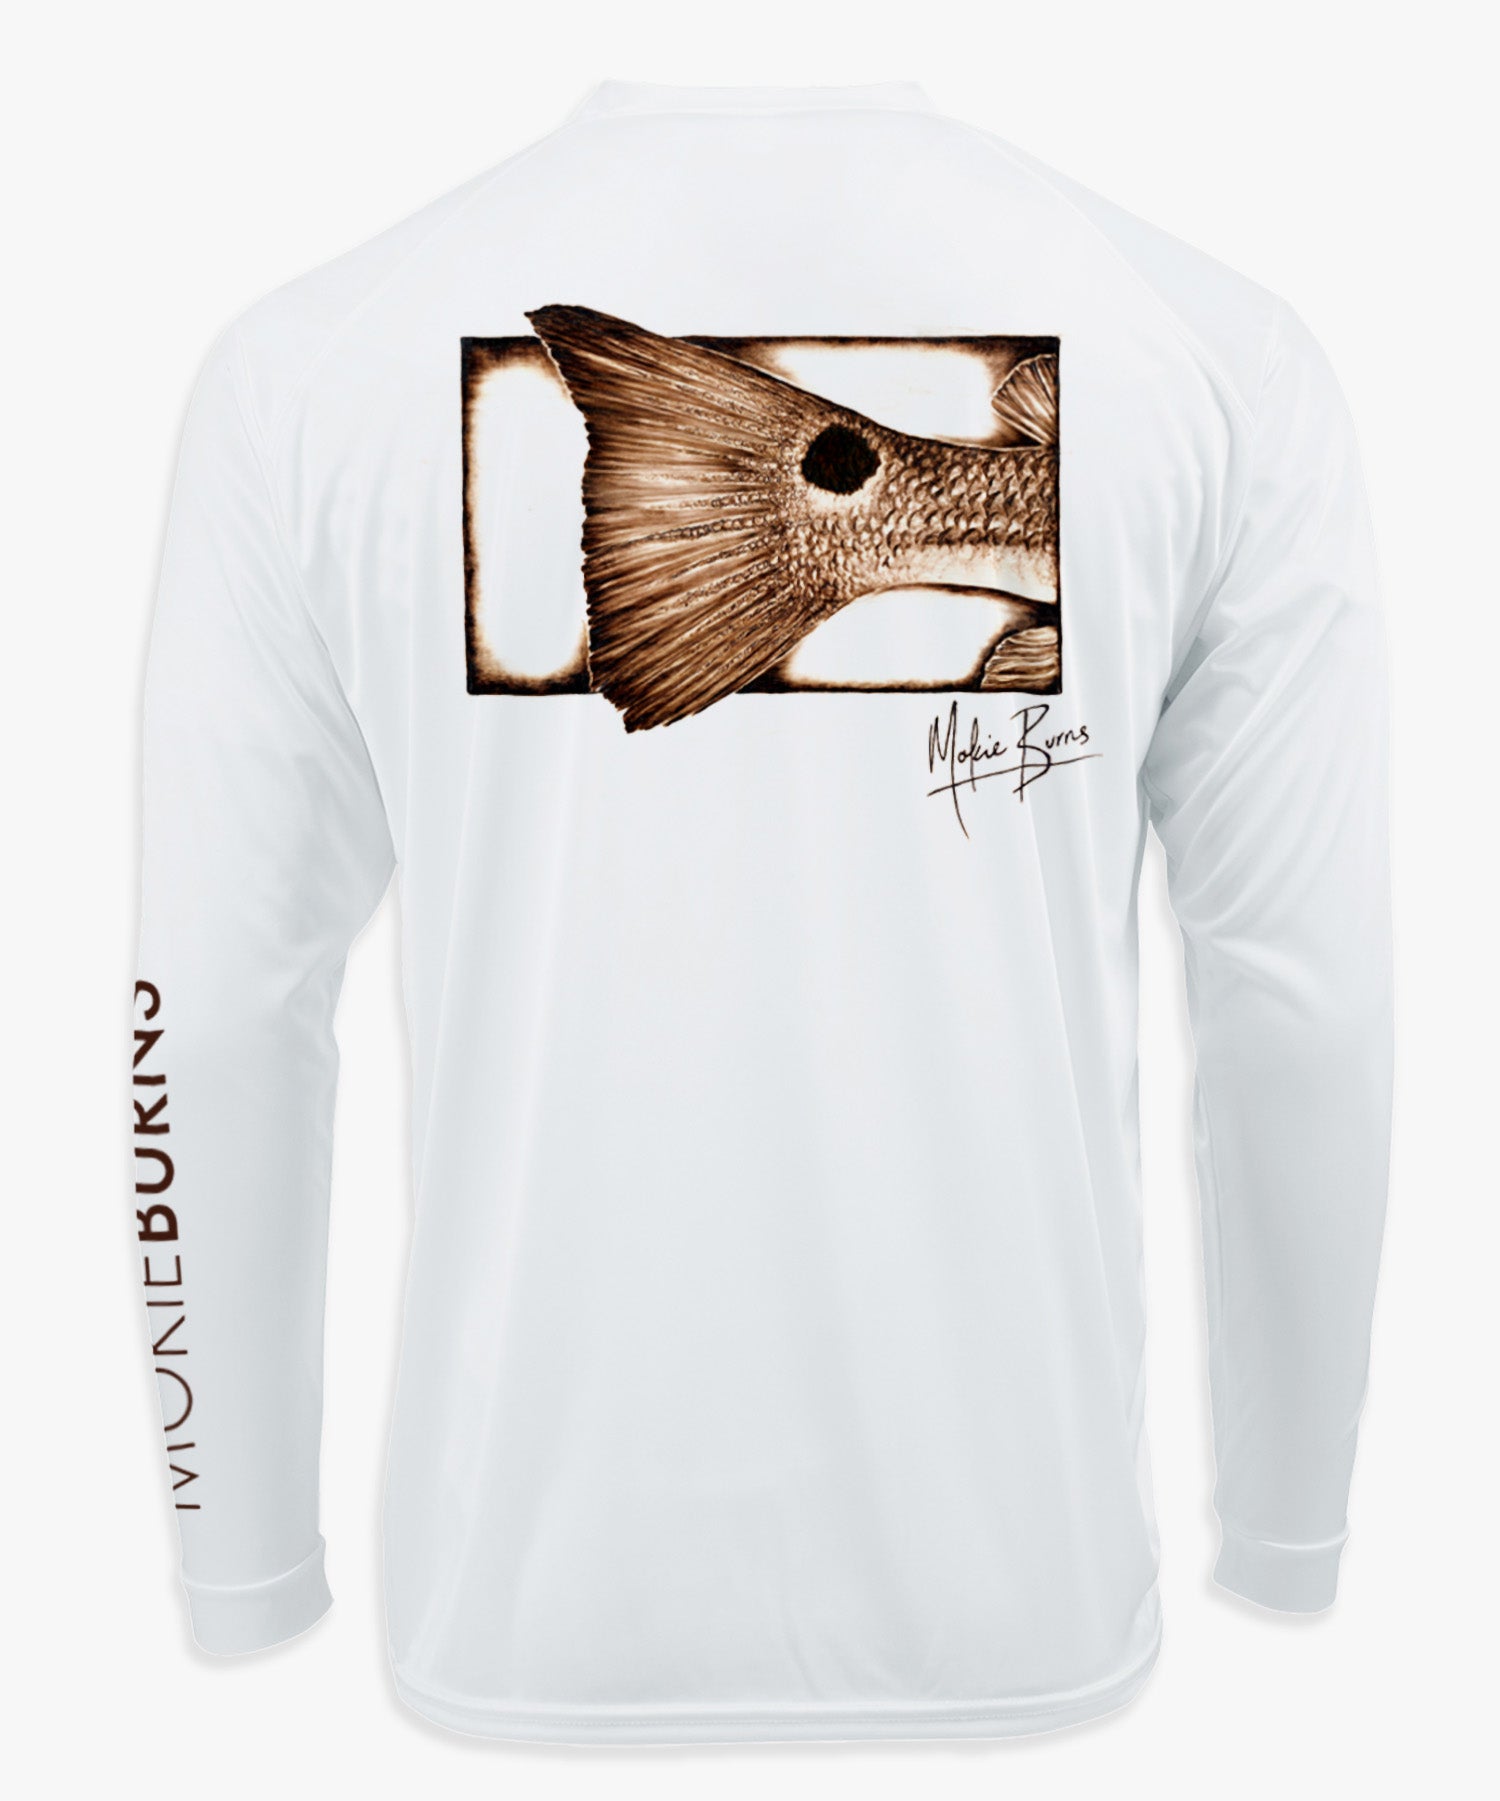 unisex Tshirt Mens Tshirts - Cotton Tshirt - Surfing Monkey Tshirt - Marine Graphic Tee , Fishing Tshirt / Tshirt Surfmonkey M / Ash